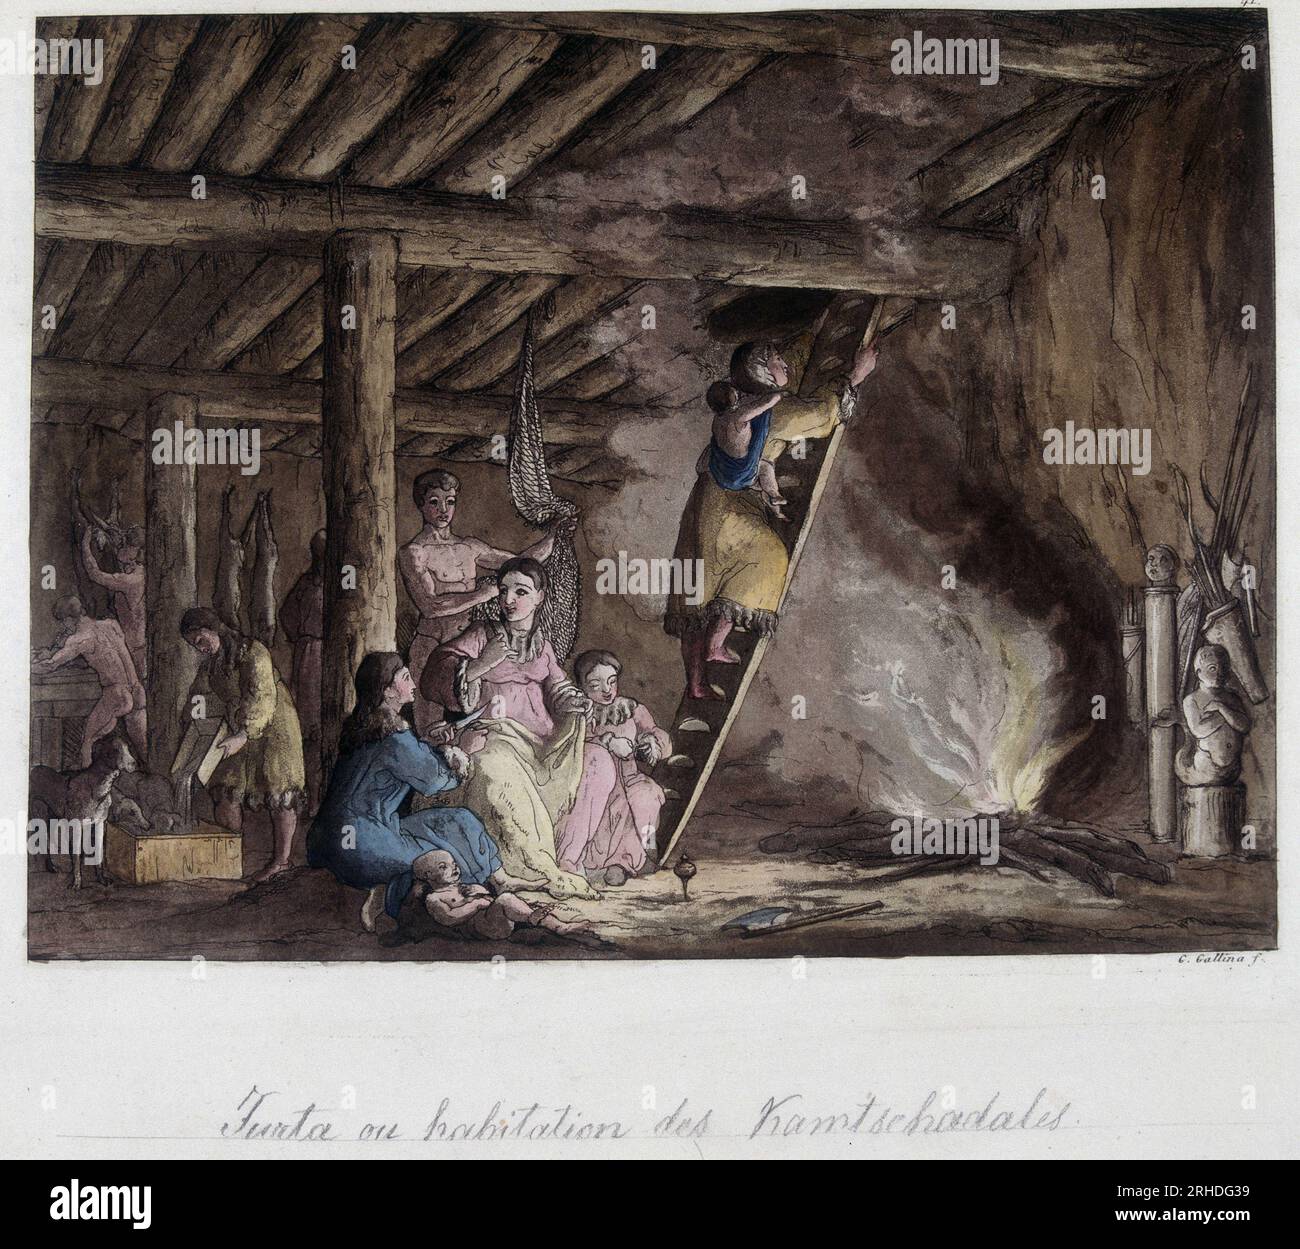 Habitation des Kamtschadales, Siberie. In 'Le costume ancien et moderne', 1819-1820 par Ferrario. Stock Photo